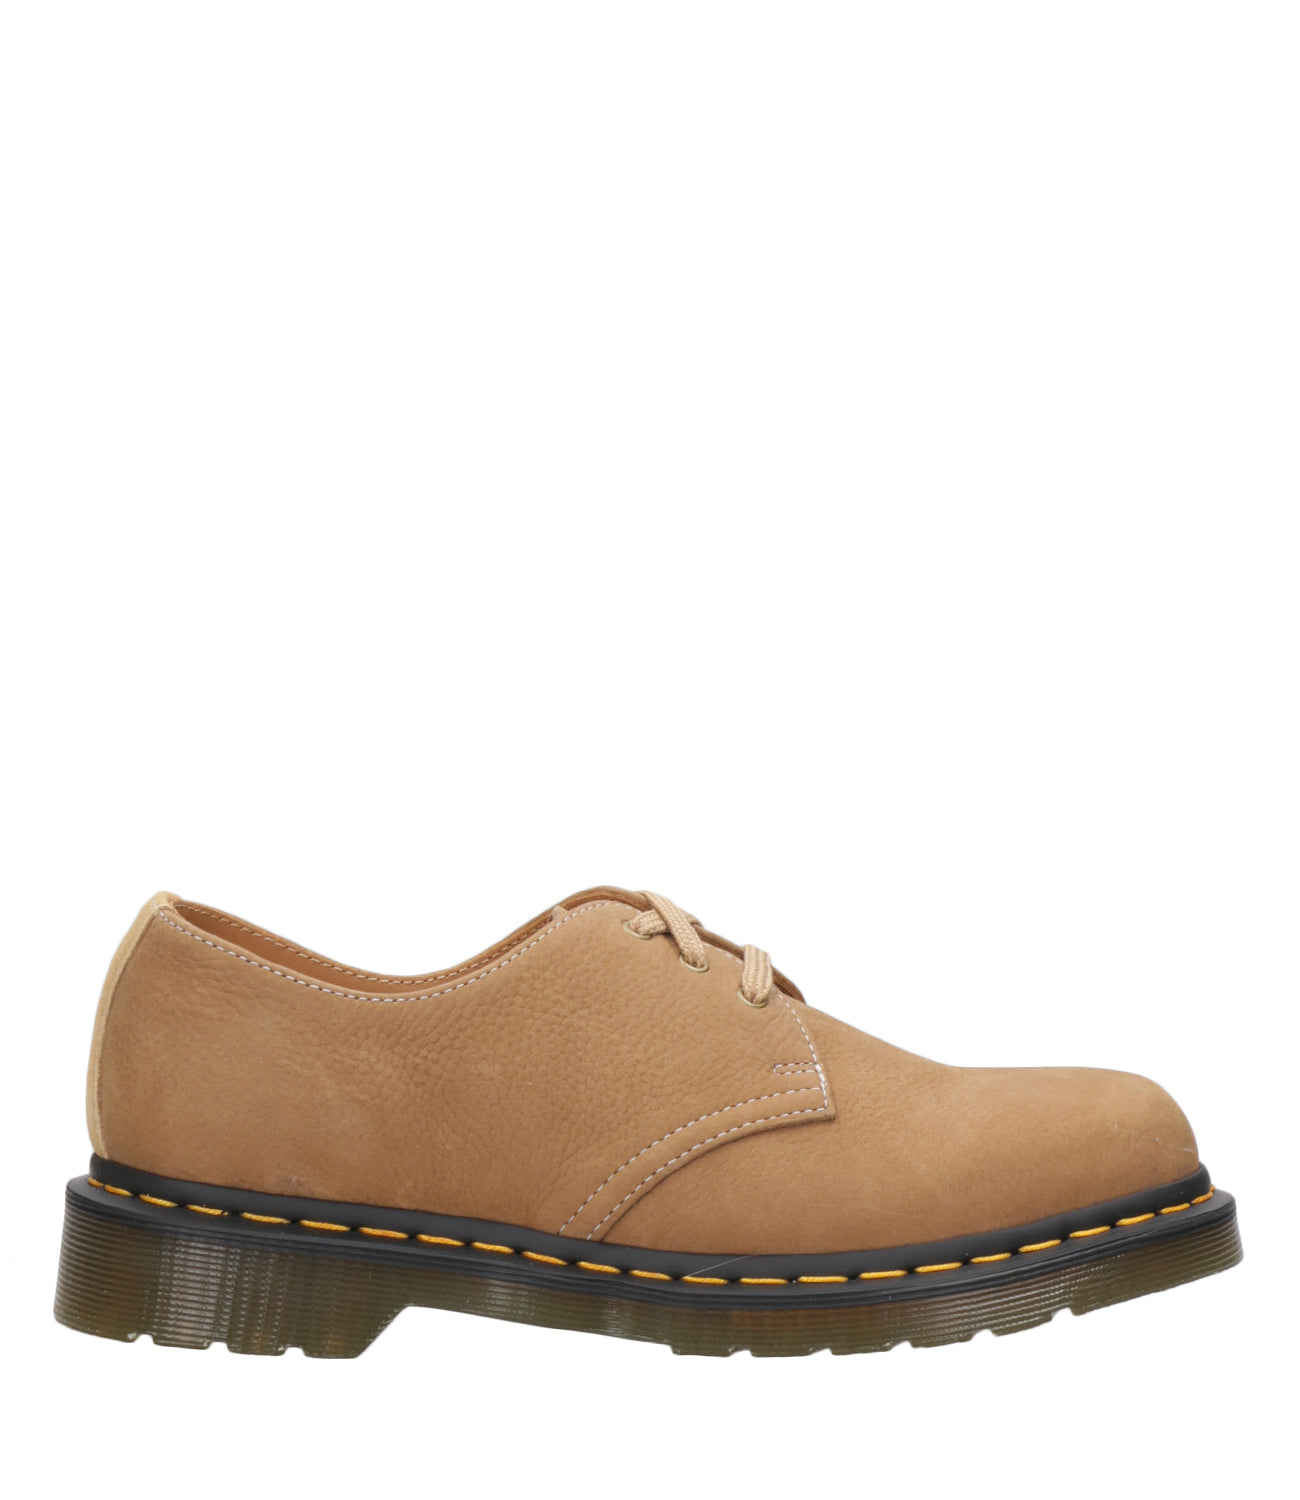 Dr Martens | Shoes 1461 Tan